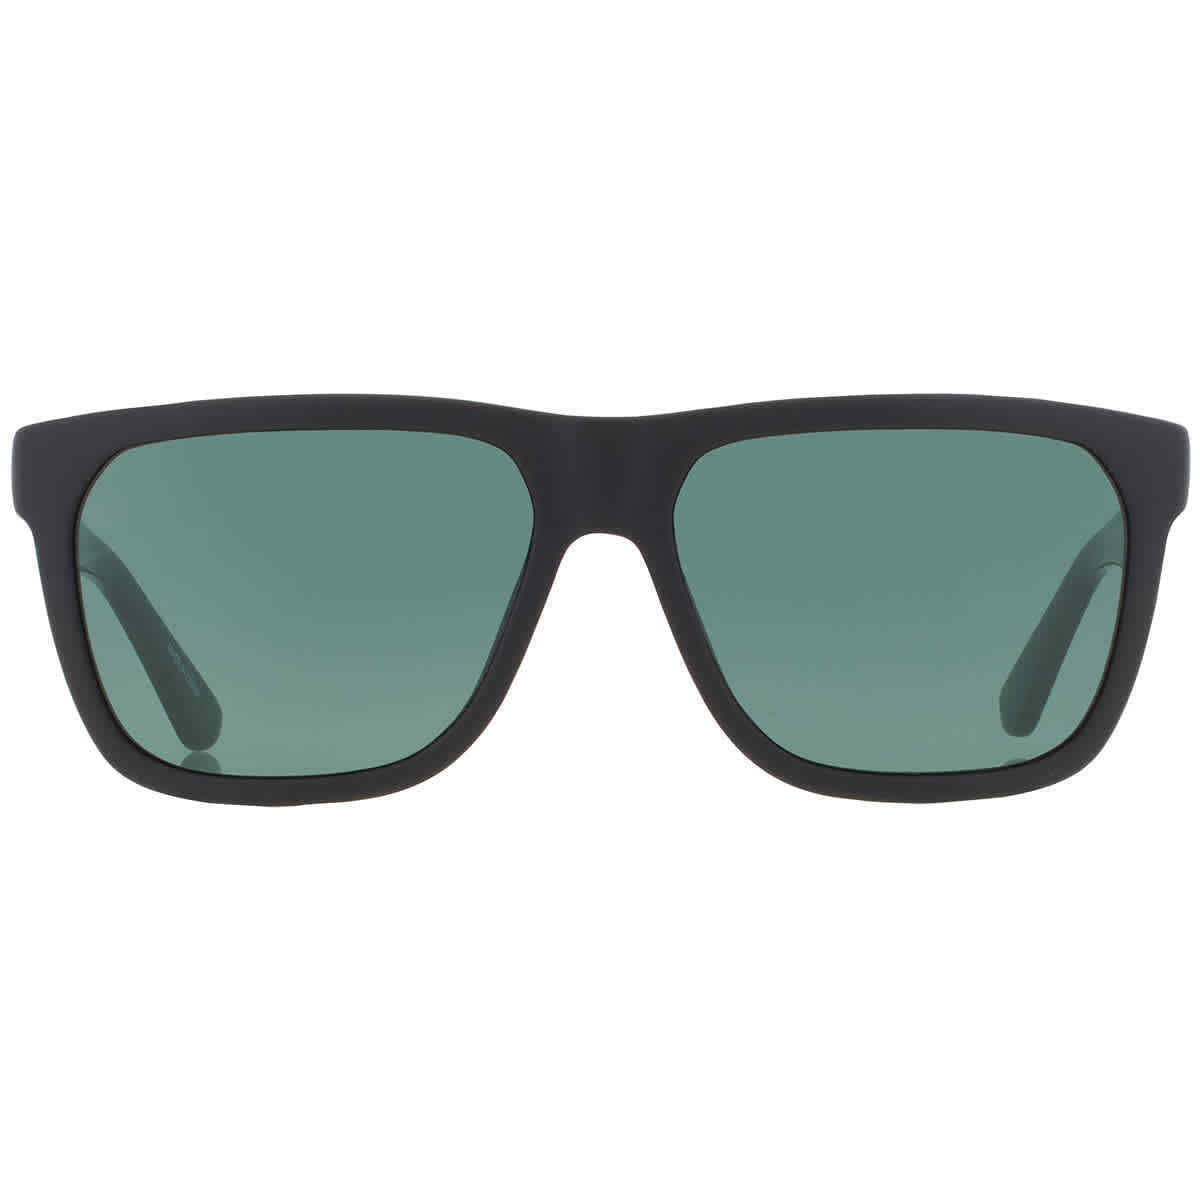 Lacoste L732S-004-5615 56mm New Sunglasses